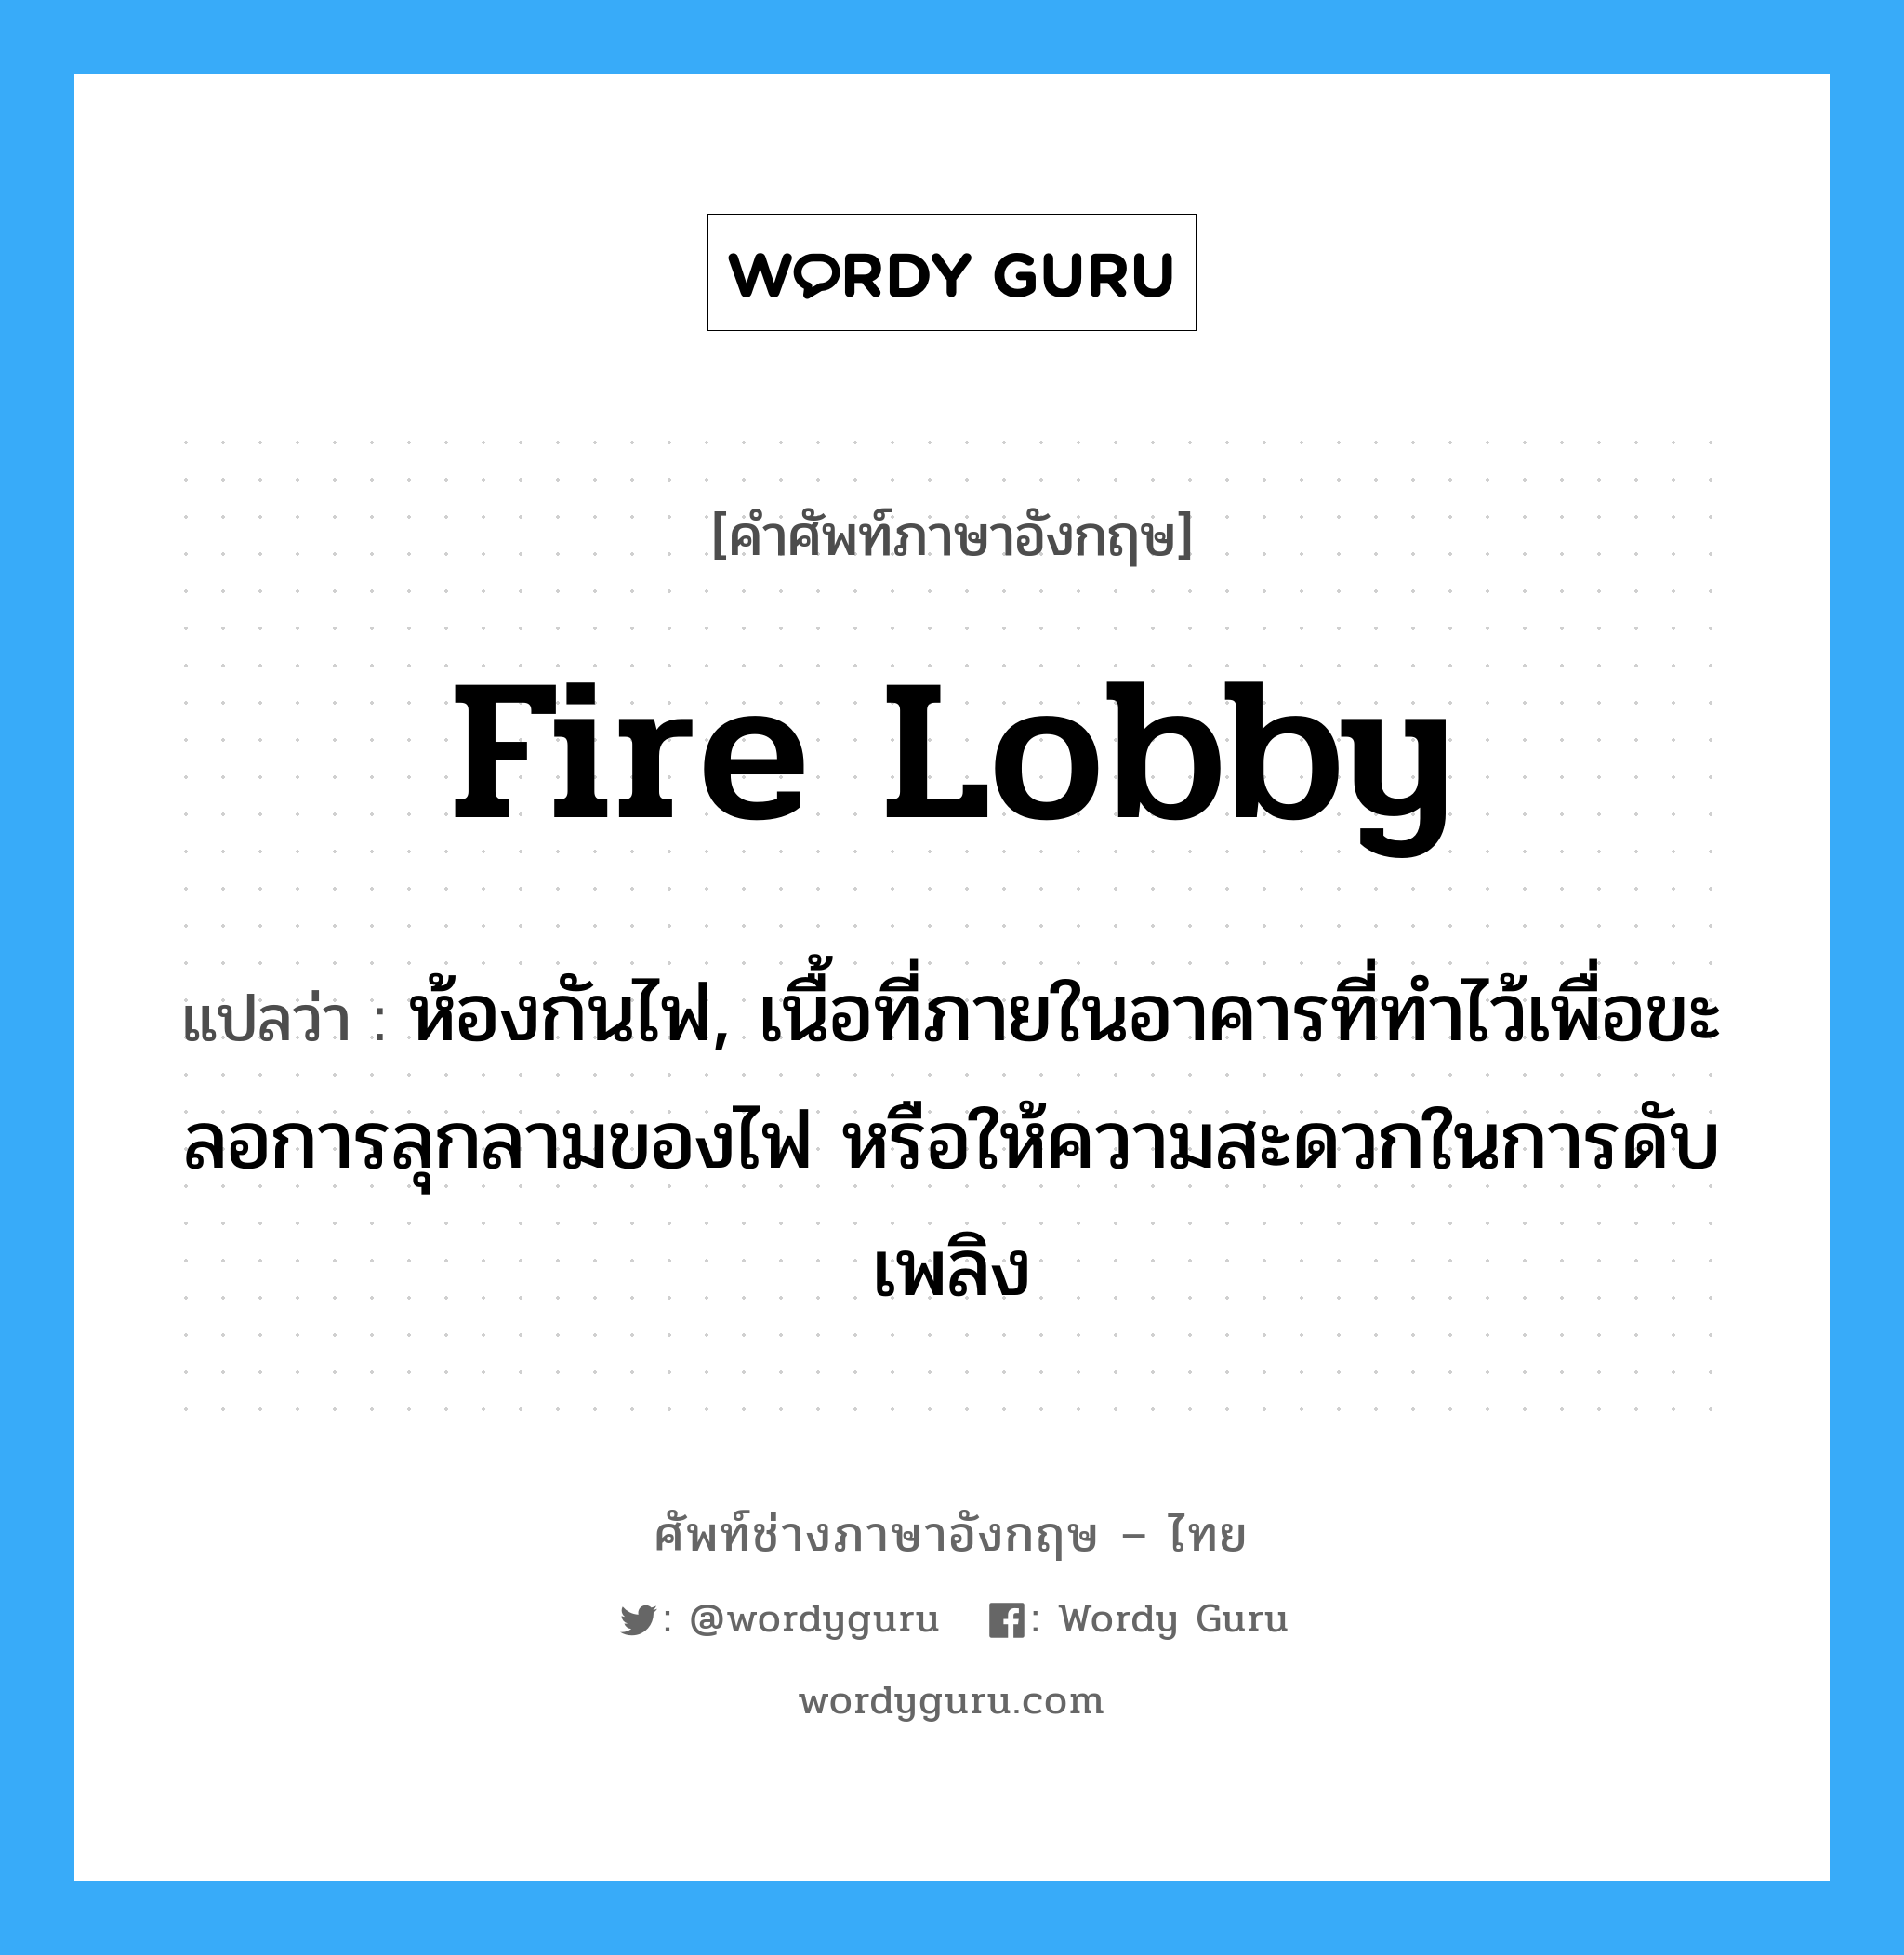 fire lobby แปลว่า?, คำศัพท์ช่างภาษาอังกฤษ - ไทย fire lobby คำศัพท์ภาษาอังกฤษ fire lobby แปลว่า ห้องกันไฟ, เนื้อที่ภายในอาคารที่ทำไว้เพื่อขะลอการลุกลามของไฟ หรือให้ความสะดวกในการดับเพลิง